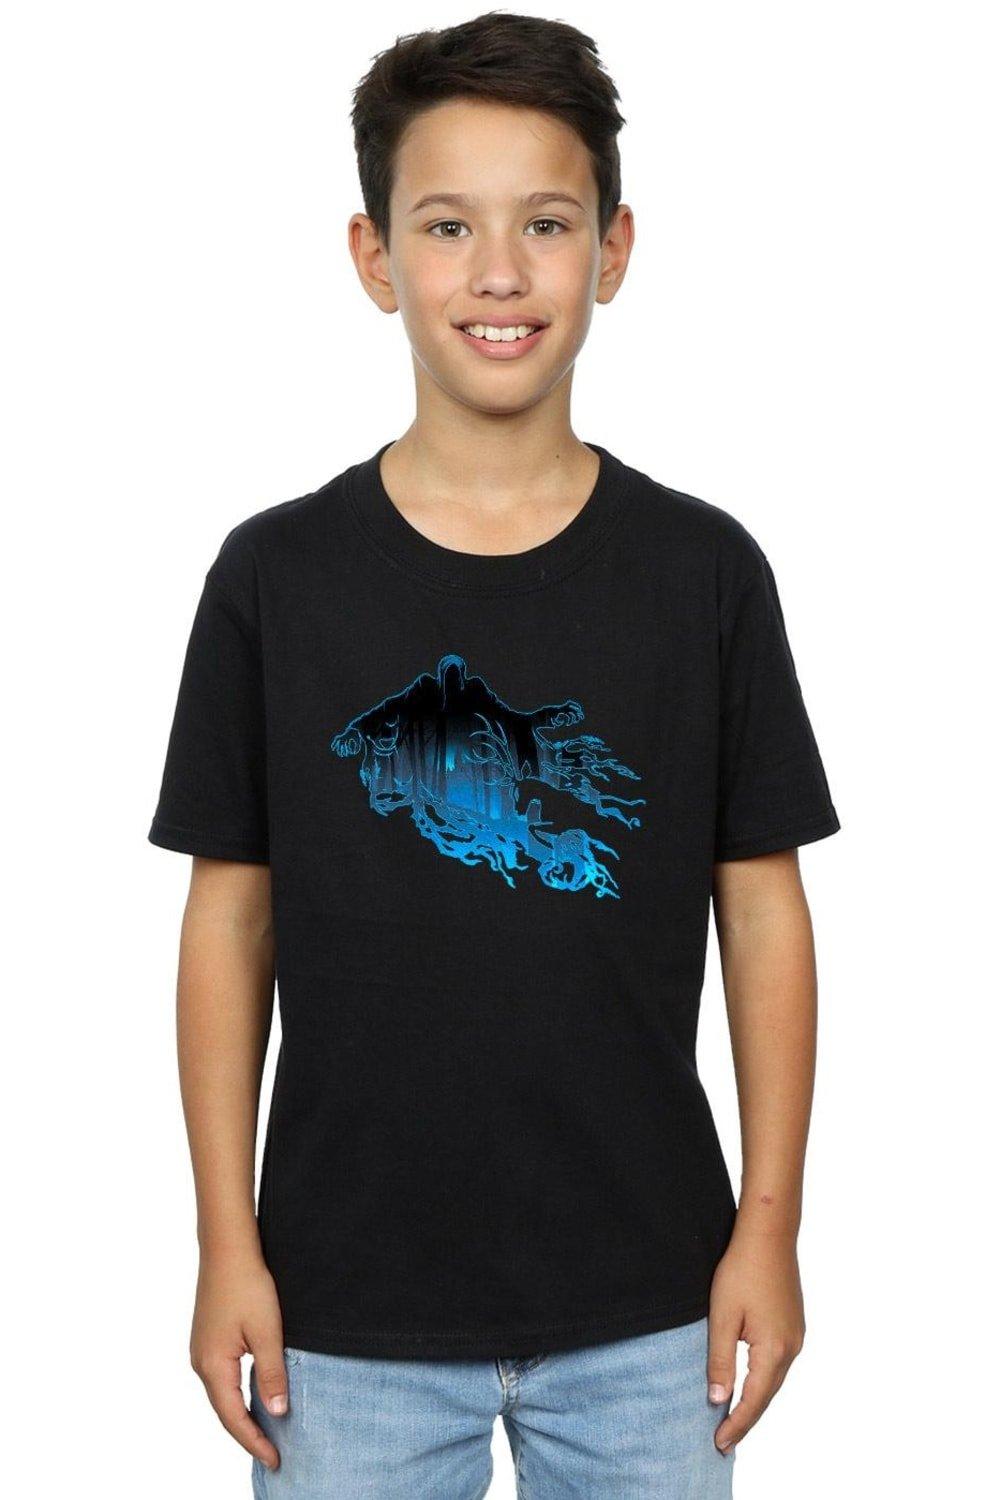 Dementor Silhouette T-Shirt